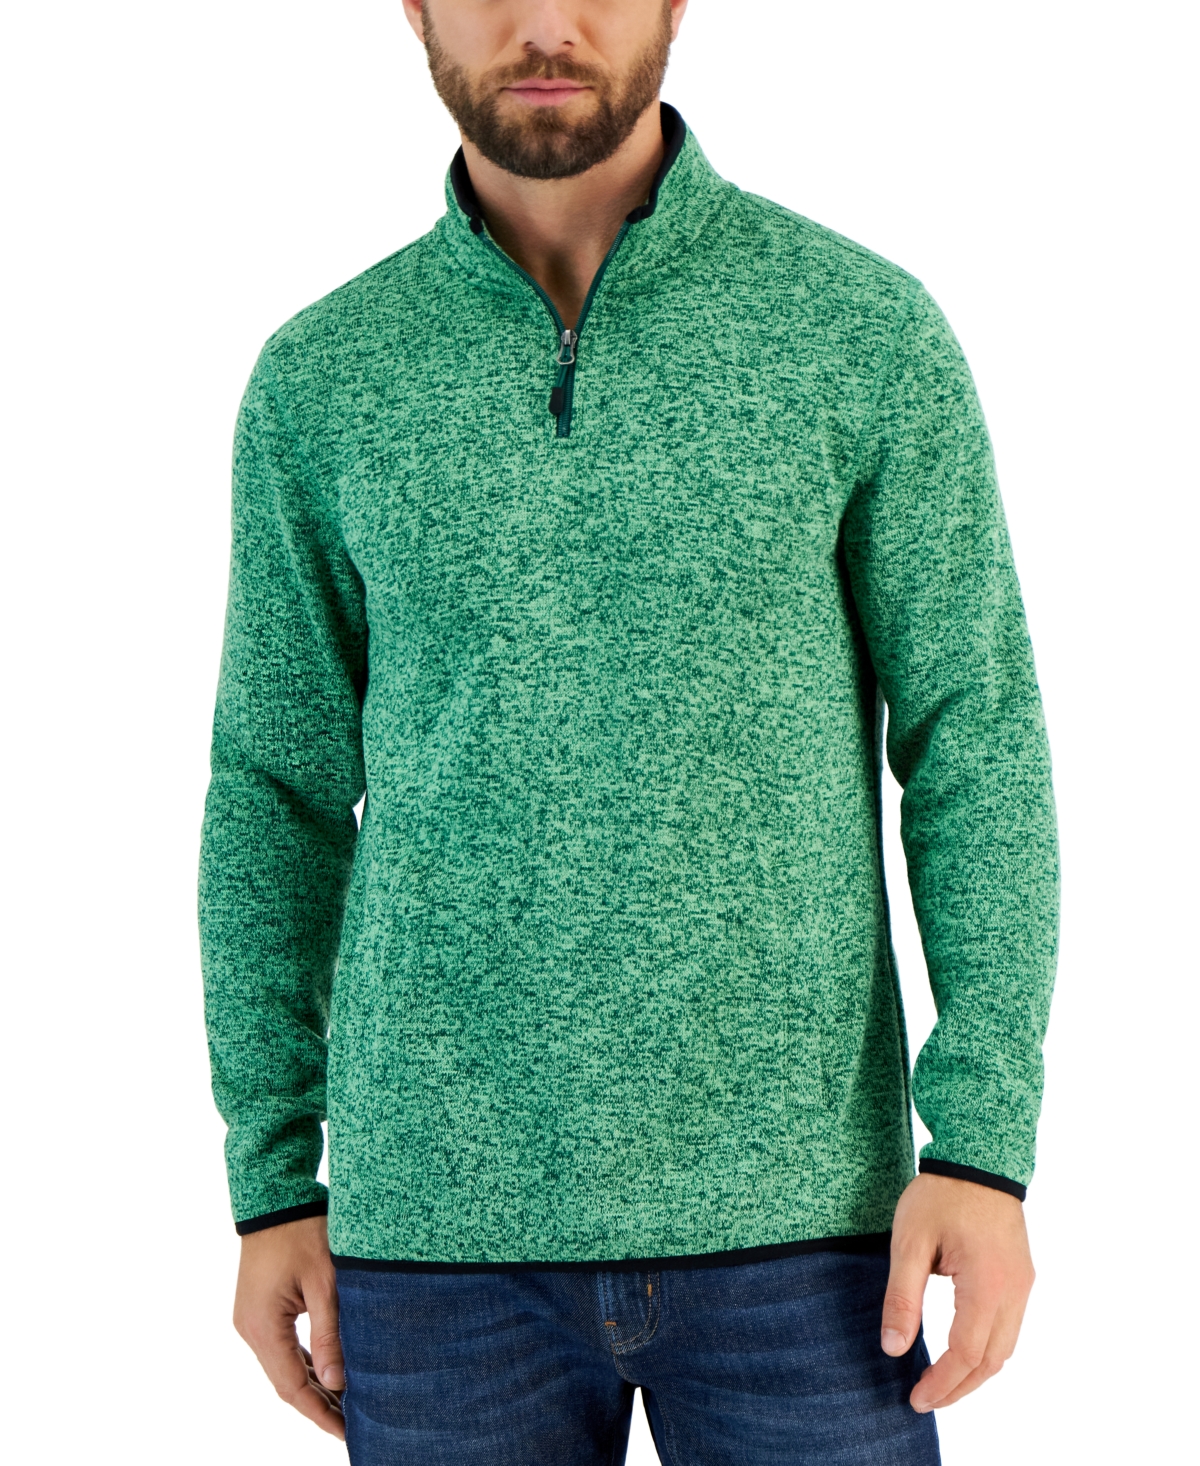 Men's Quarter-Zip Fleece Sweater, Created for Macy's - Spruce Up